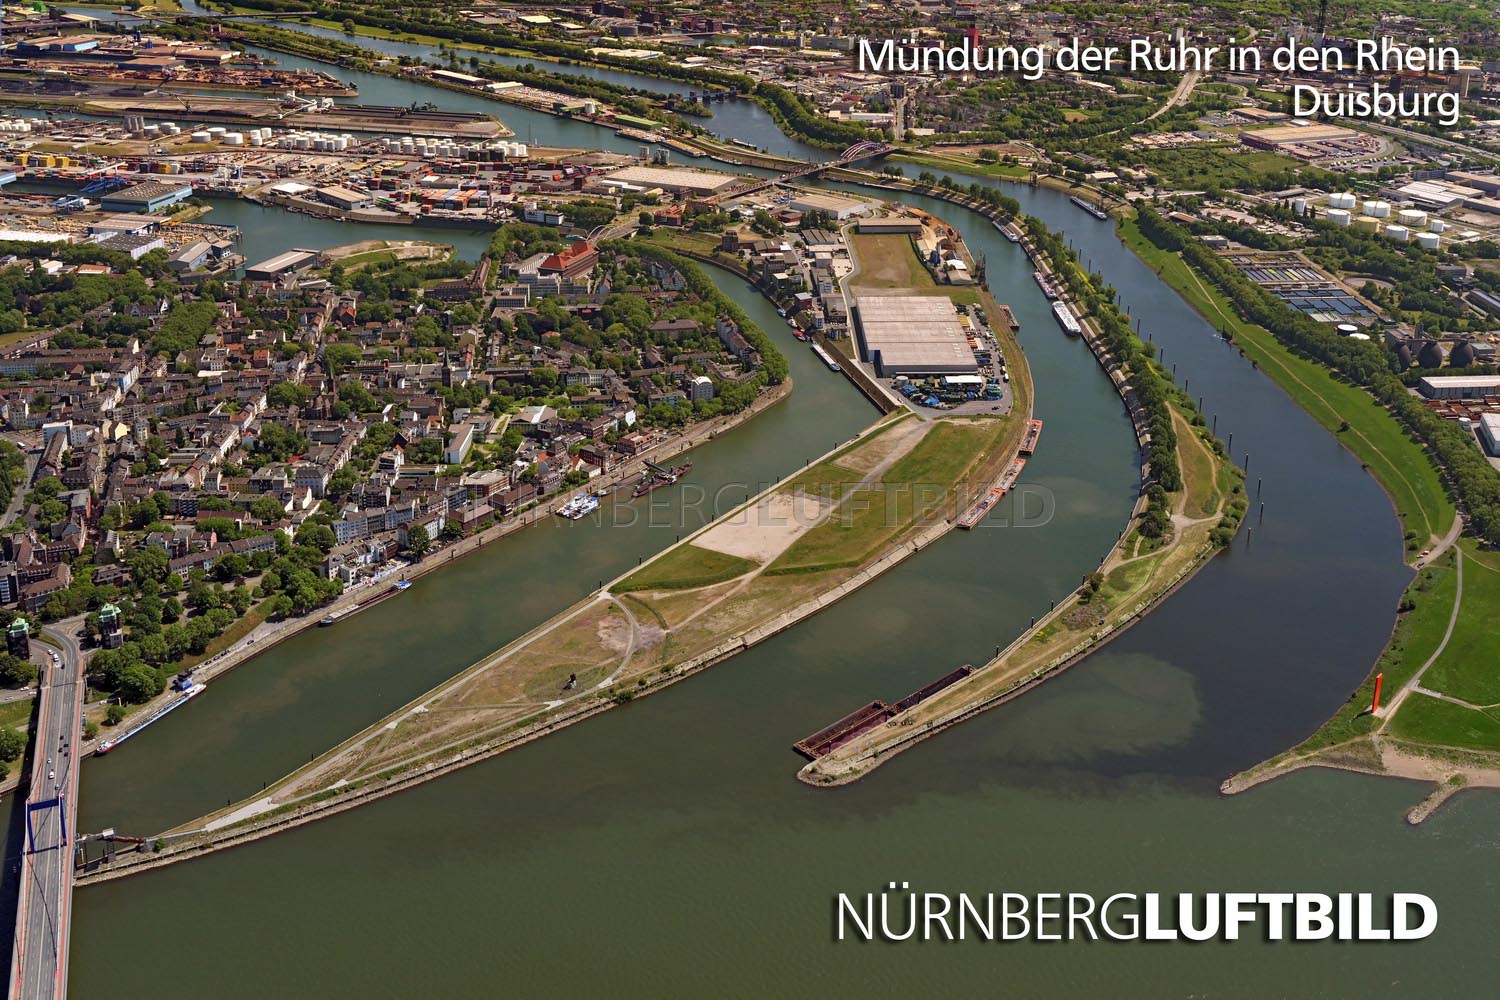 Mündung der Ruhr in den Rhein, Duisburg